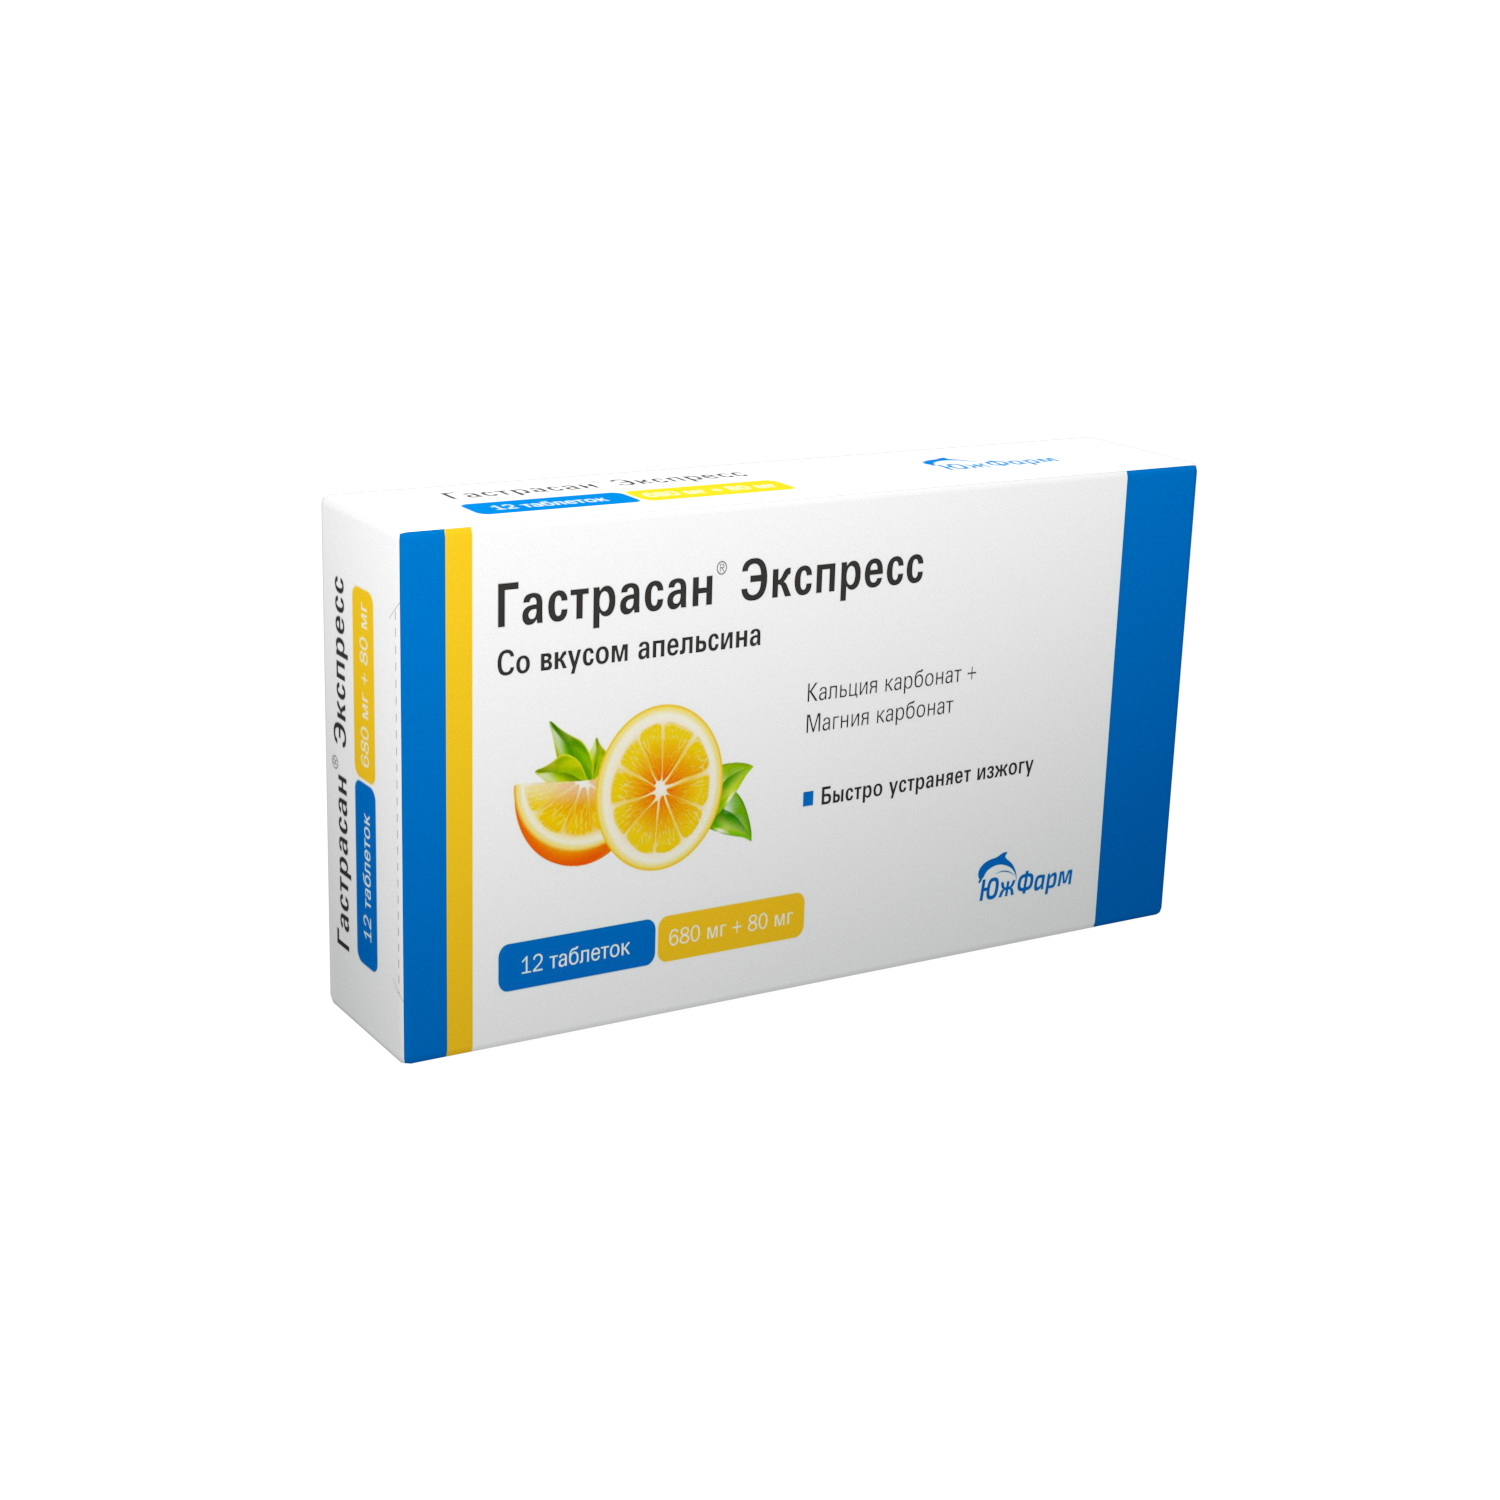 Гастрасан Экспресс таблетки жевательные со вкусом апельсина 680мг+80мг N 12